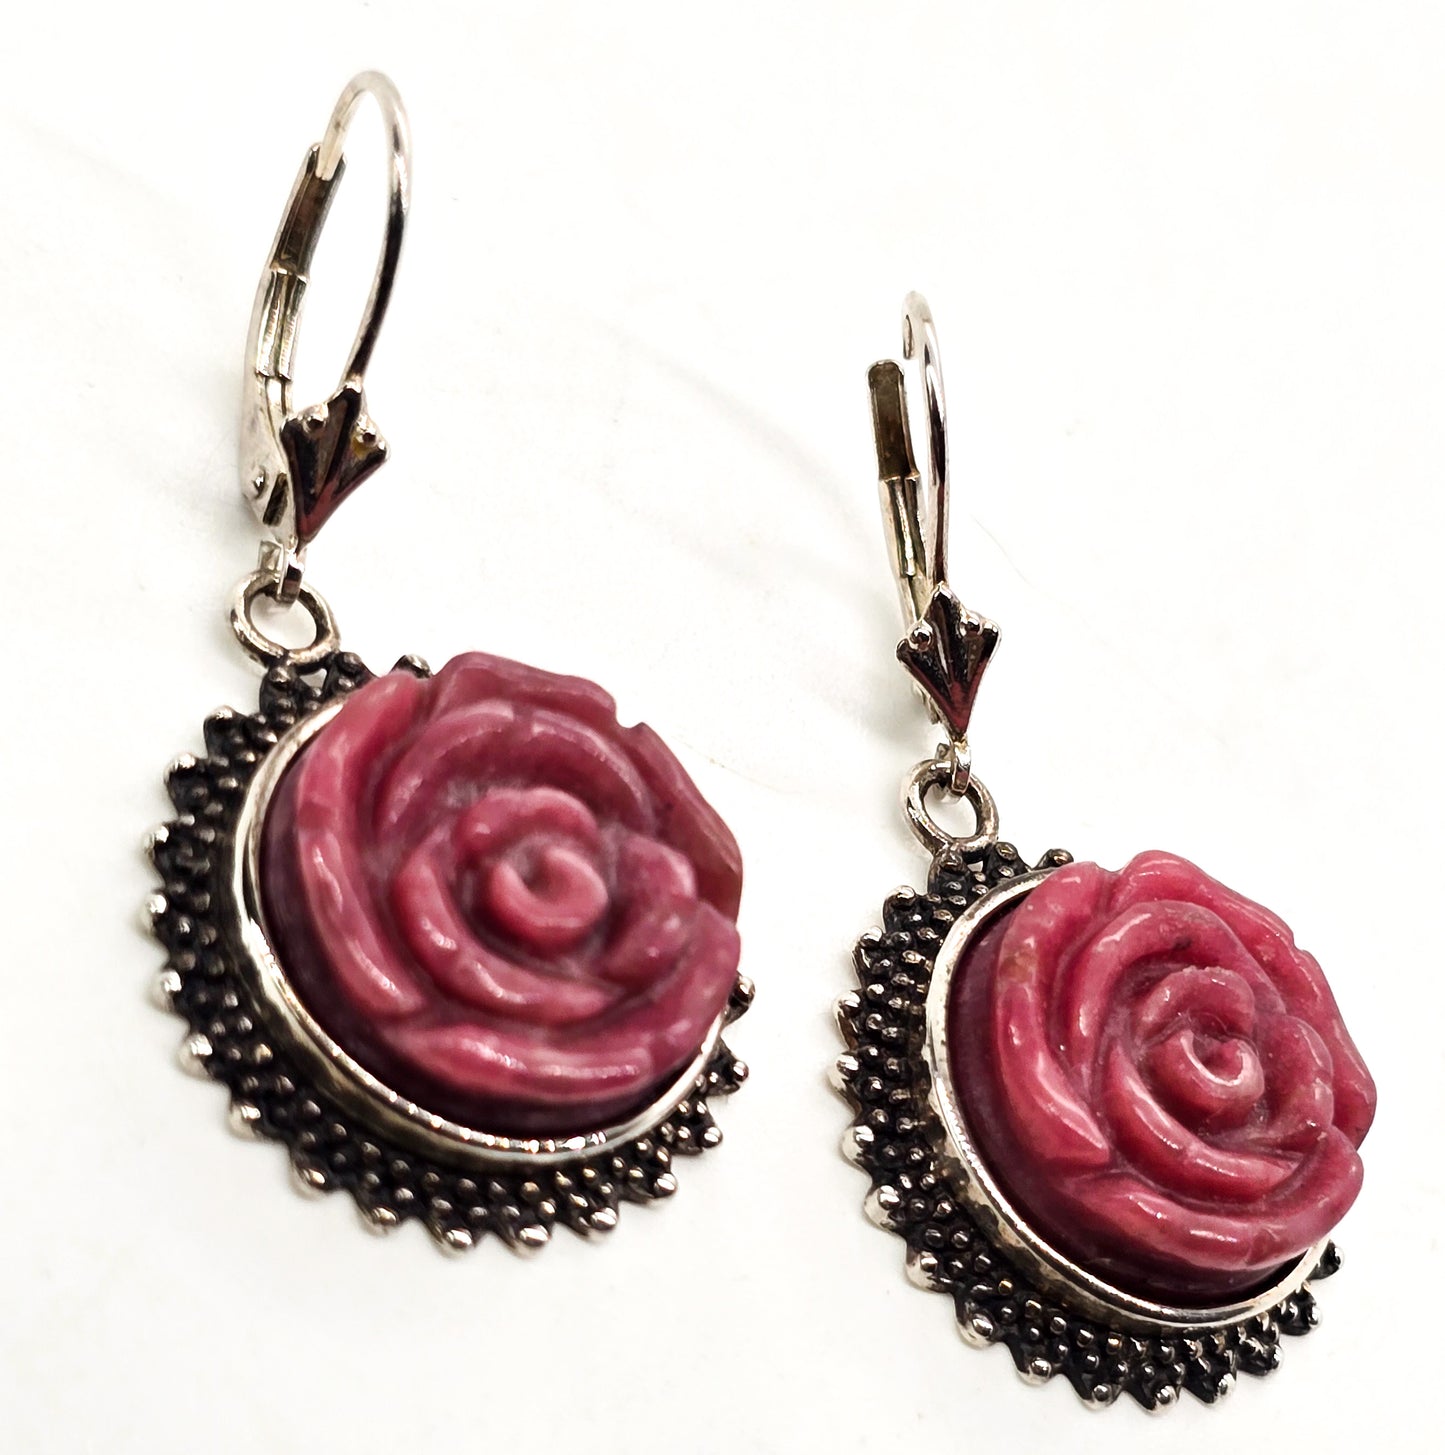 Amy Kahn Russell AKR Carved Rhodonite flower pink gemstone sterling silver earrings